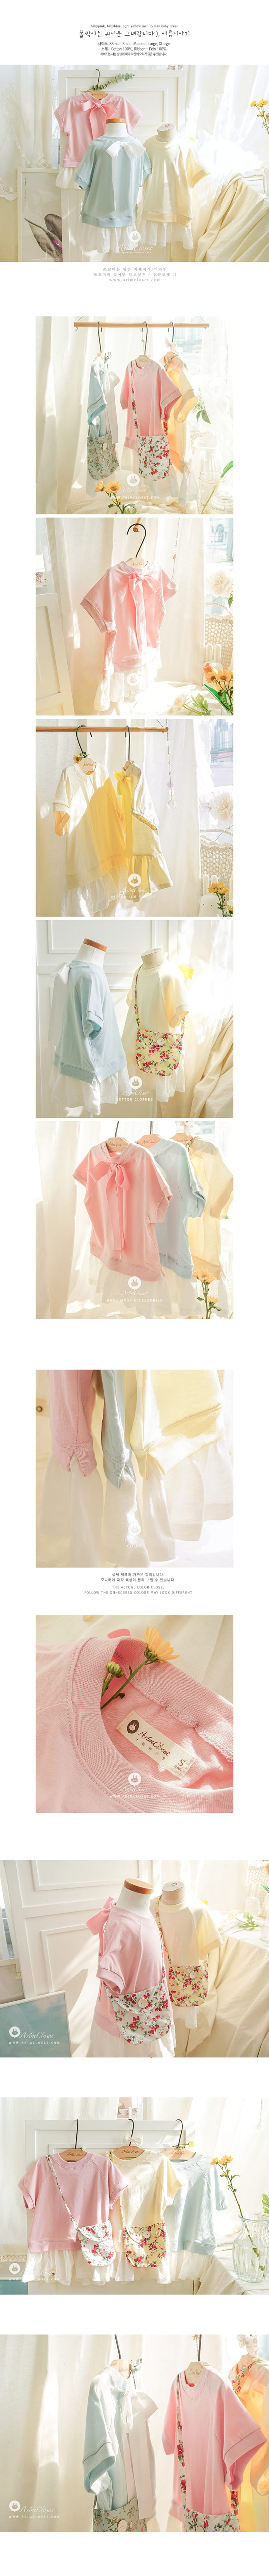 Arim Closet - Korean Baby Fashion - #onlinebabyboutique - Man to Man One-piece - 2